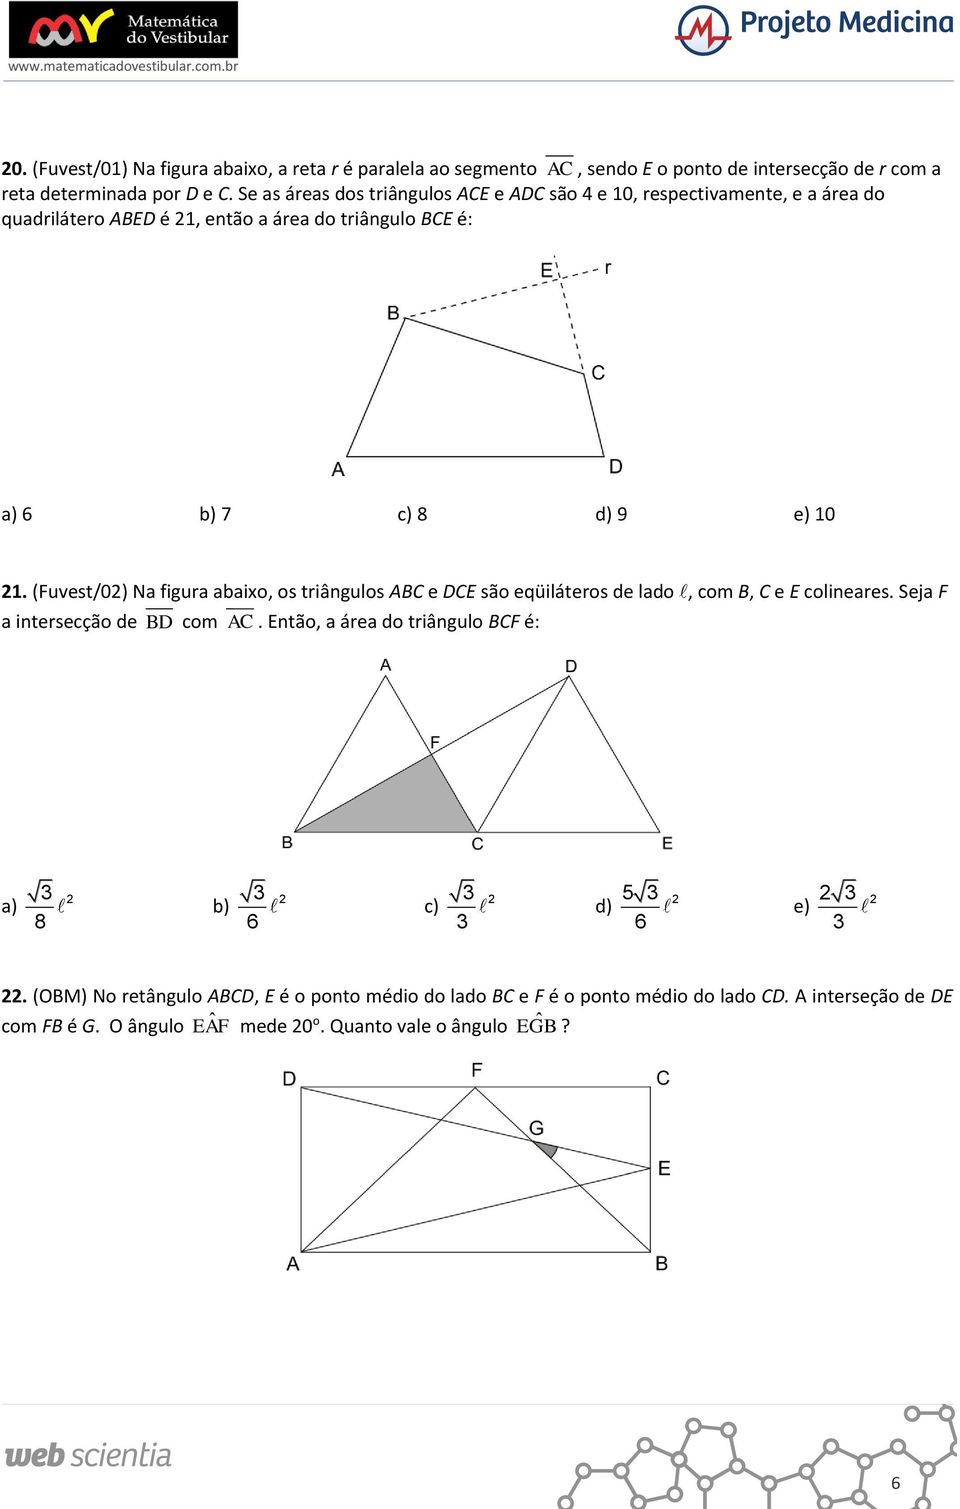 (Fuvest/0) Na figura abaixo, os triângulos ABC e DCE são eqüiláteros de lado, com B, C e E colineares. Seja F a intersecção de BD com AC.